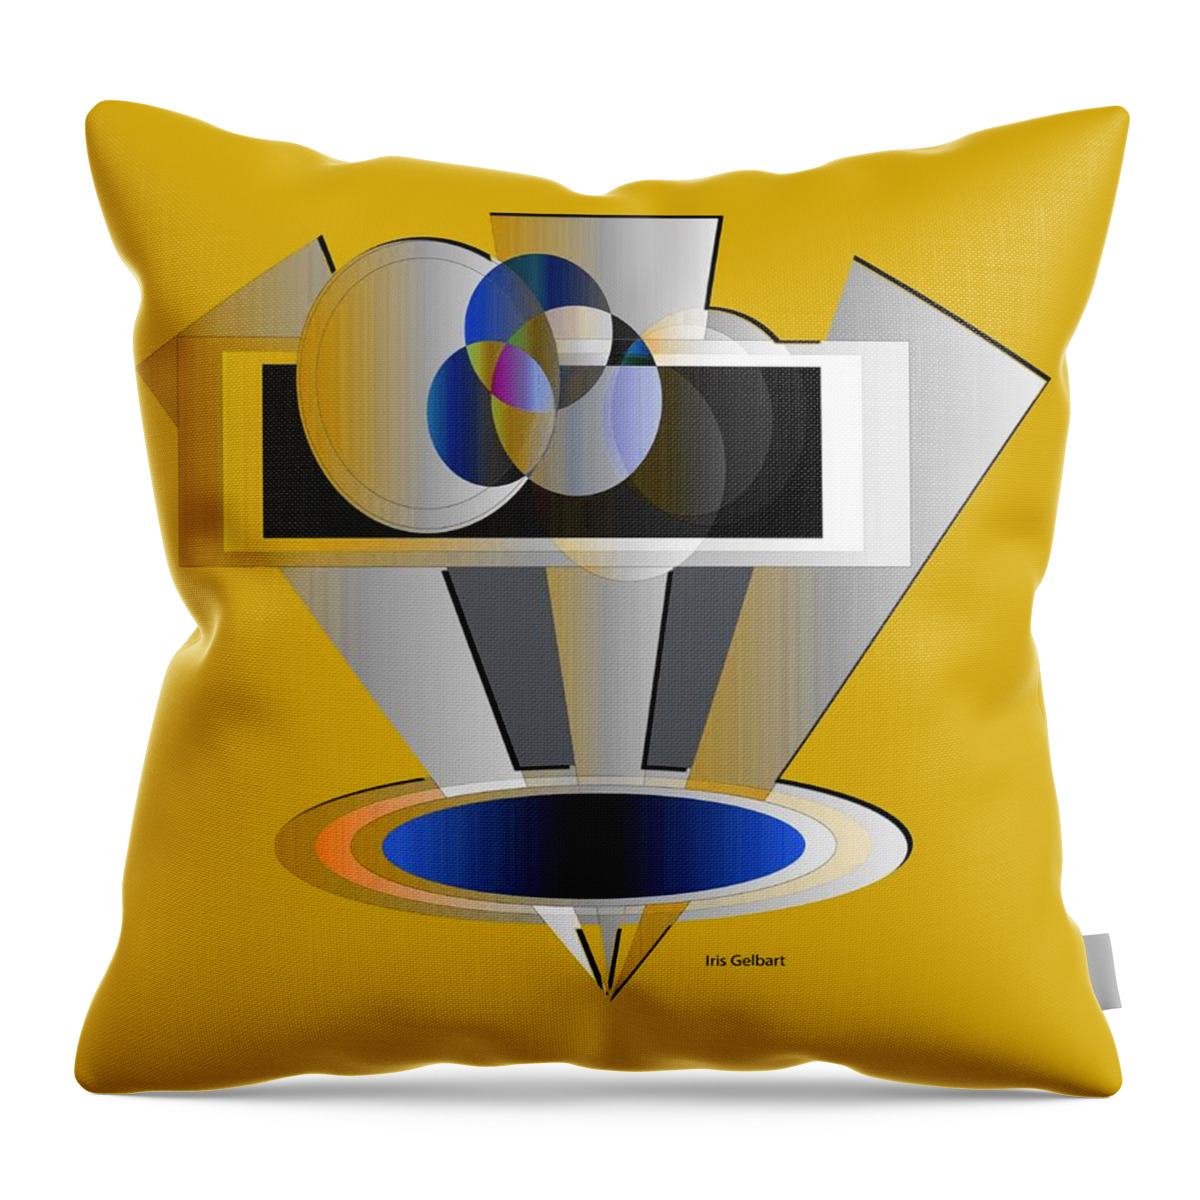 Abstract Throw Pillow featuring the digital art Modern 58 by Iris Gelbart